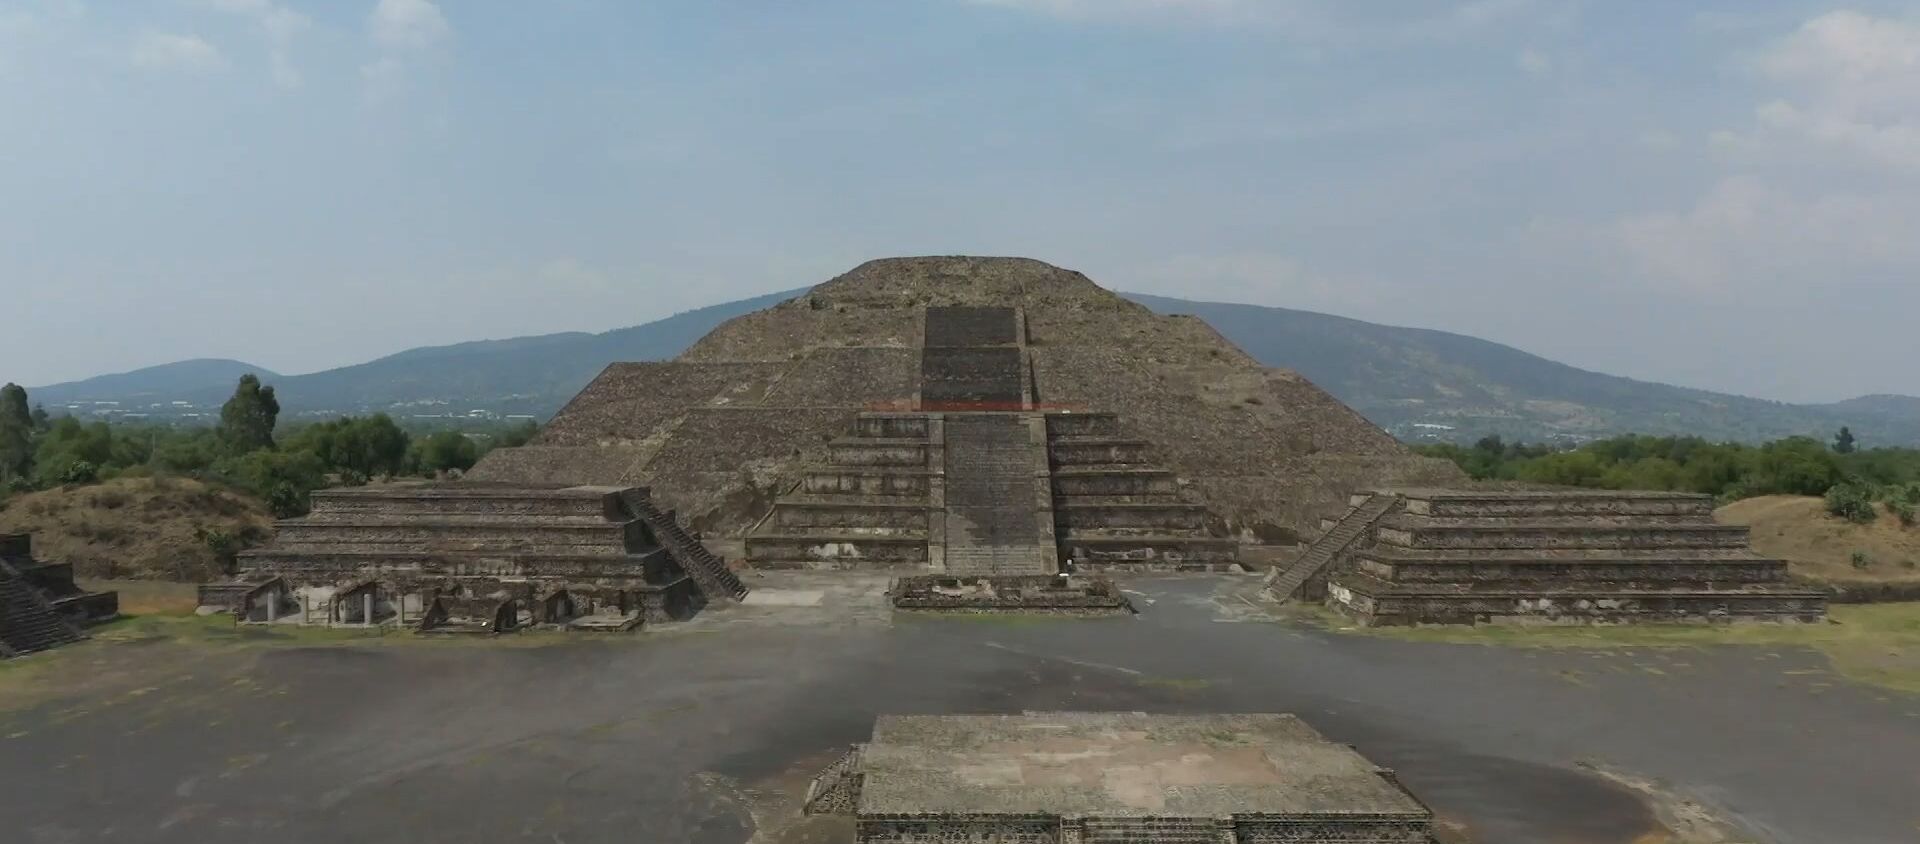 La grandeza de las pirámides de Teotihuacán completamente desiertas sin turistas - Sputnik Mundo, 1920, 20.04.2020